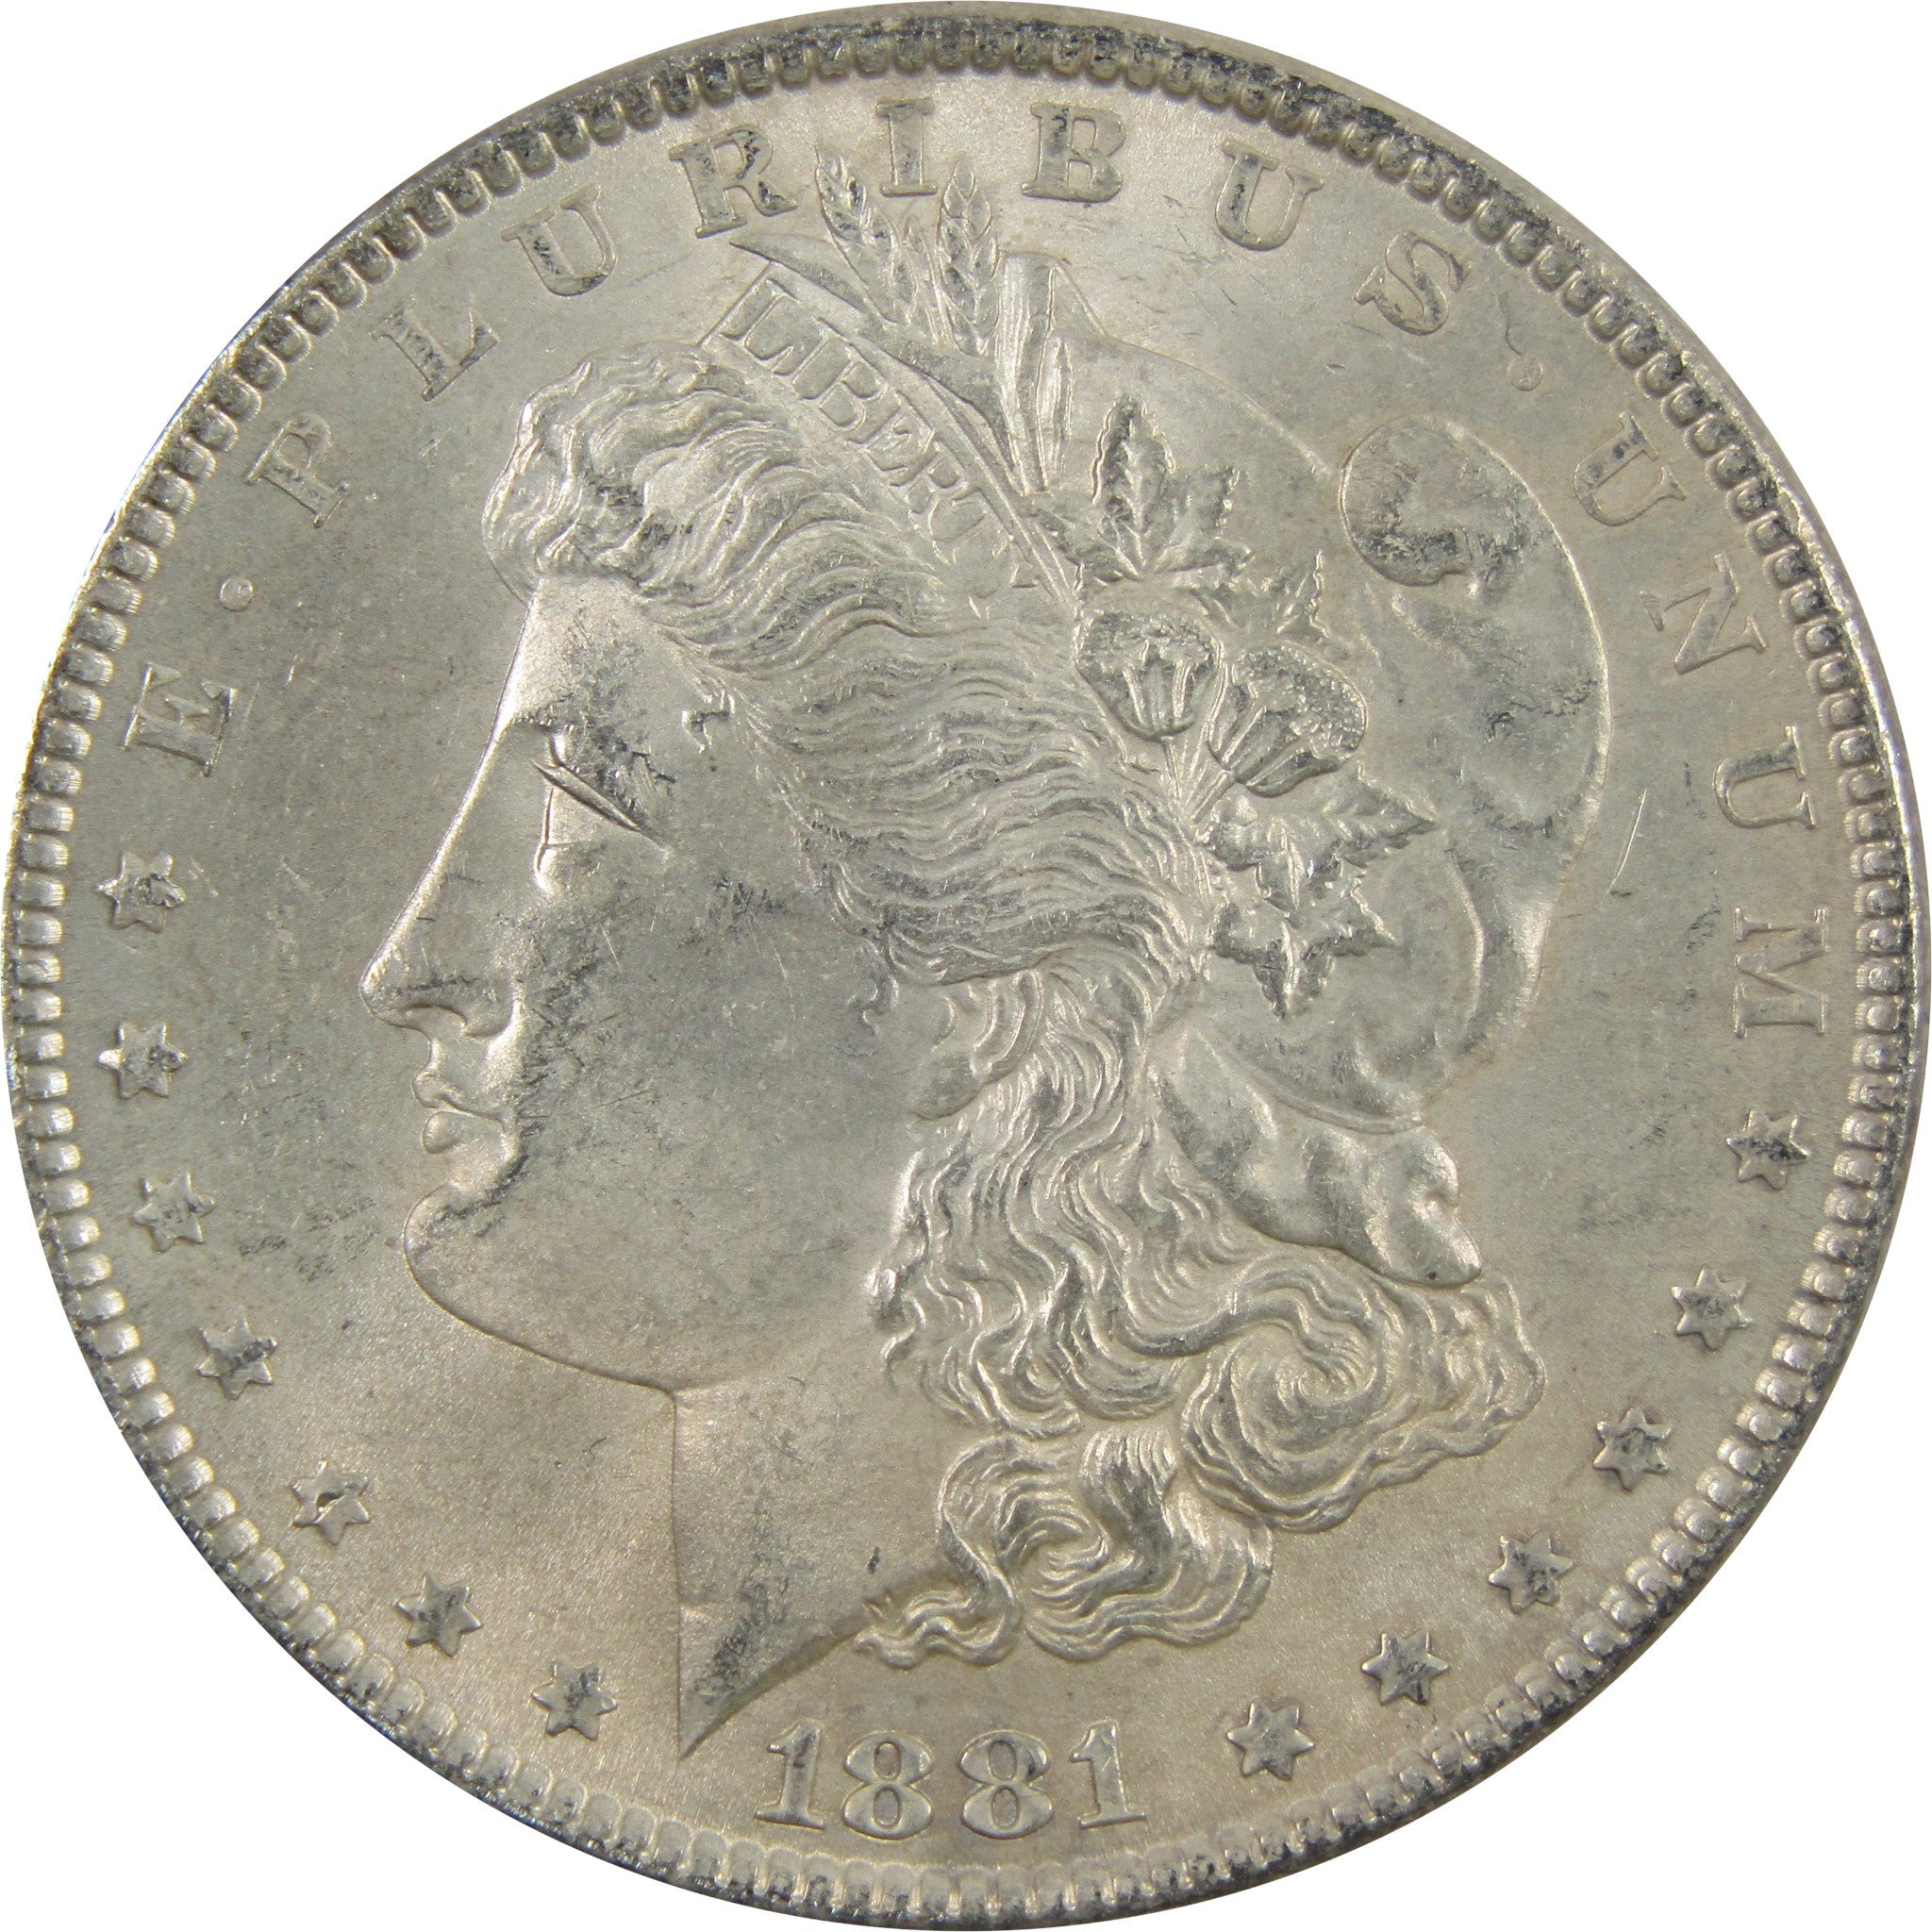 1881 Morgan Dollar BU Uncirculated 90% Silver $1 Coin SKU:I5450 - Morgan coin - Morgan silver dollar - Morgan silver dollar for sale - Profile Coins &amp; Collectibles